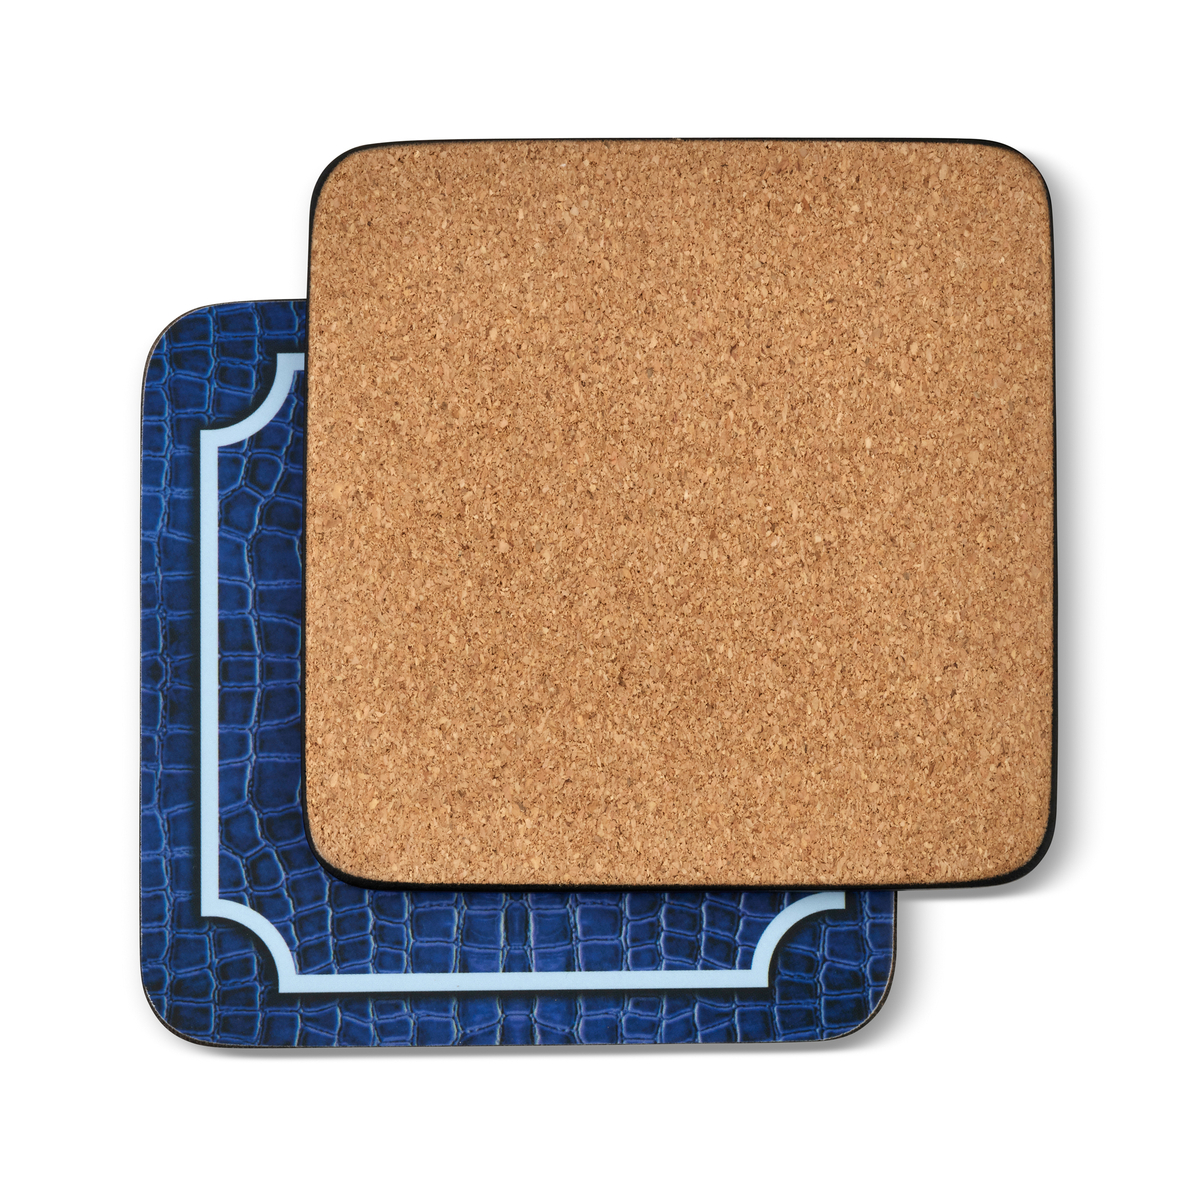 Pimpernel Blue Croc Leather Coaster Set of 6 image number null